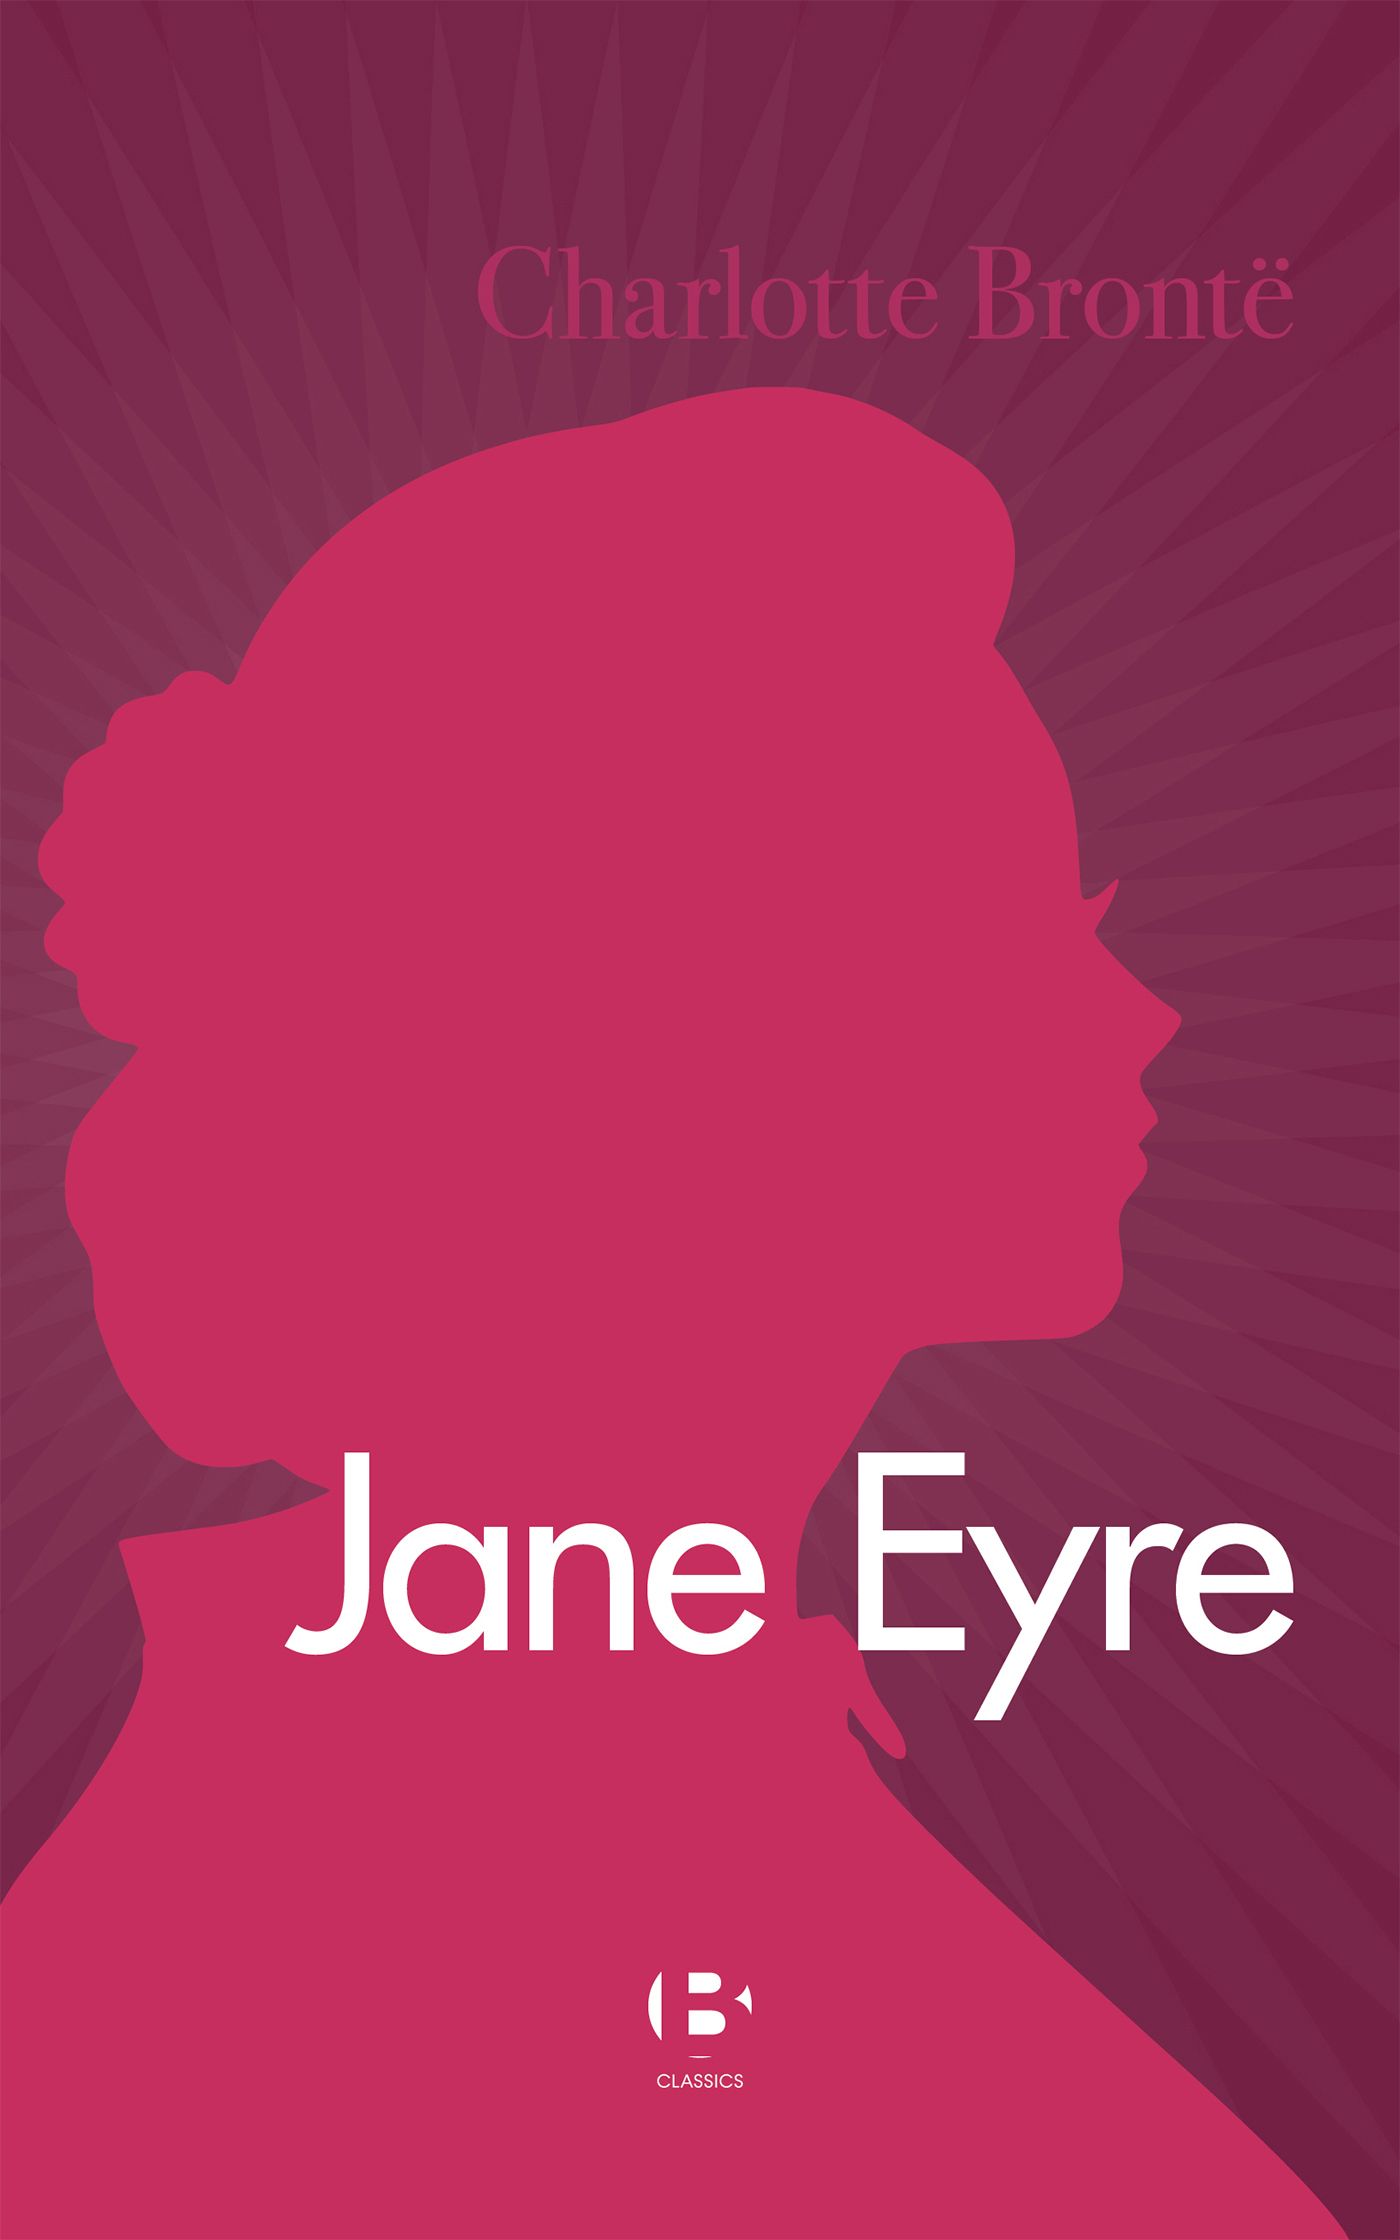 Jane Eyre, eBook by Charlotte Brontë